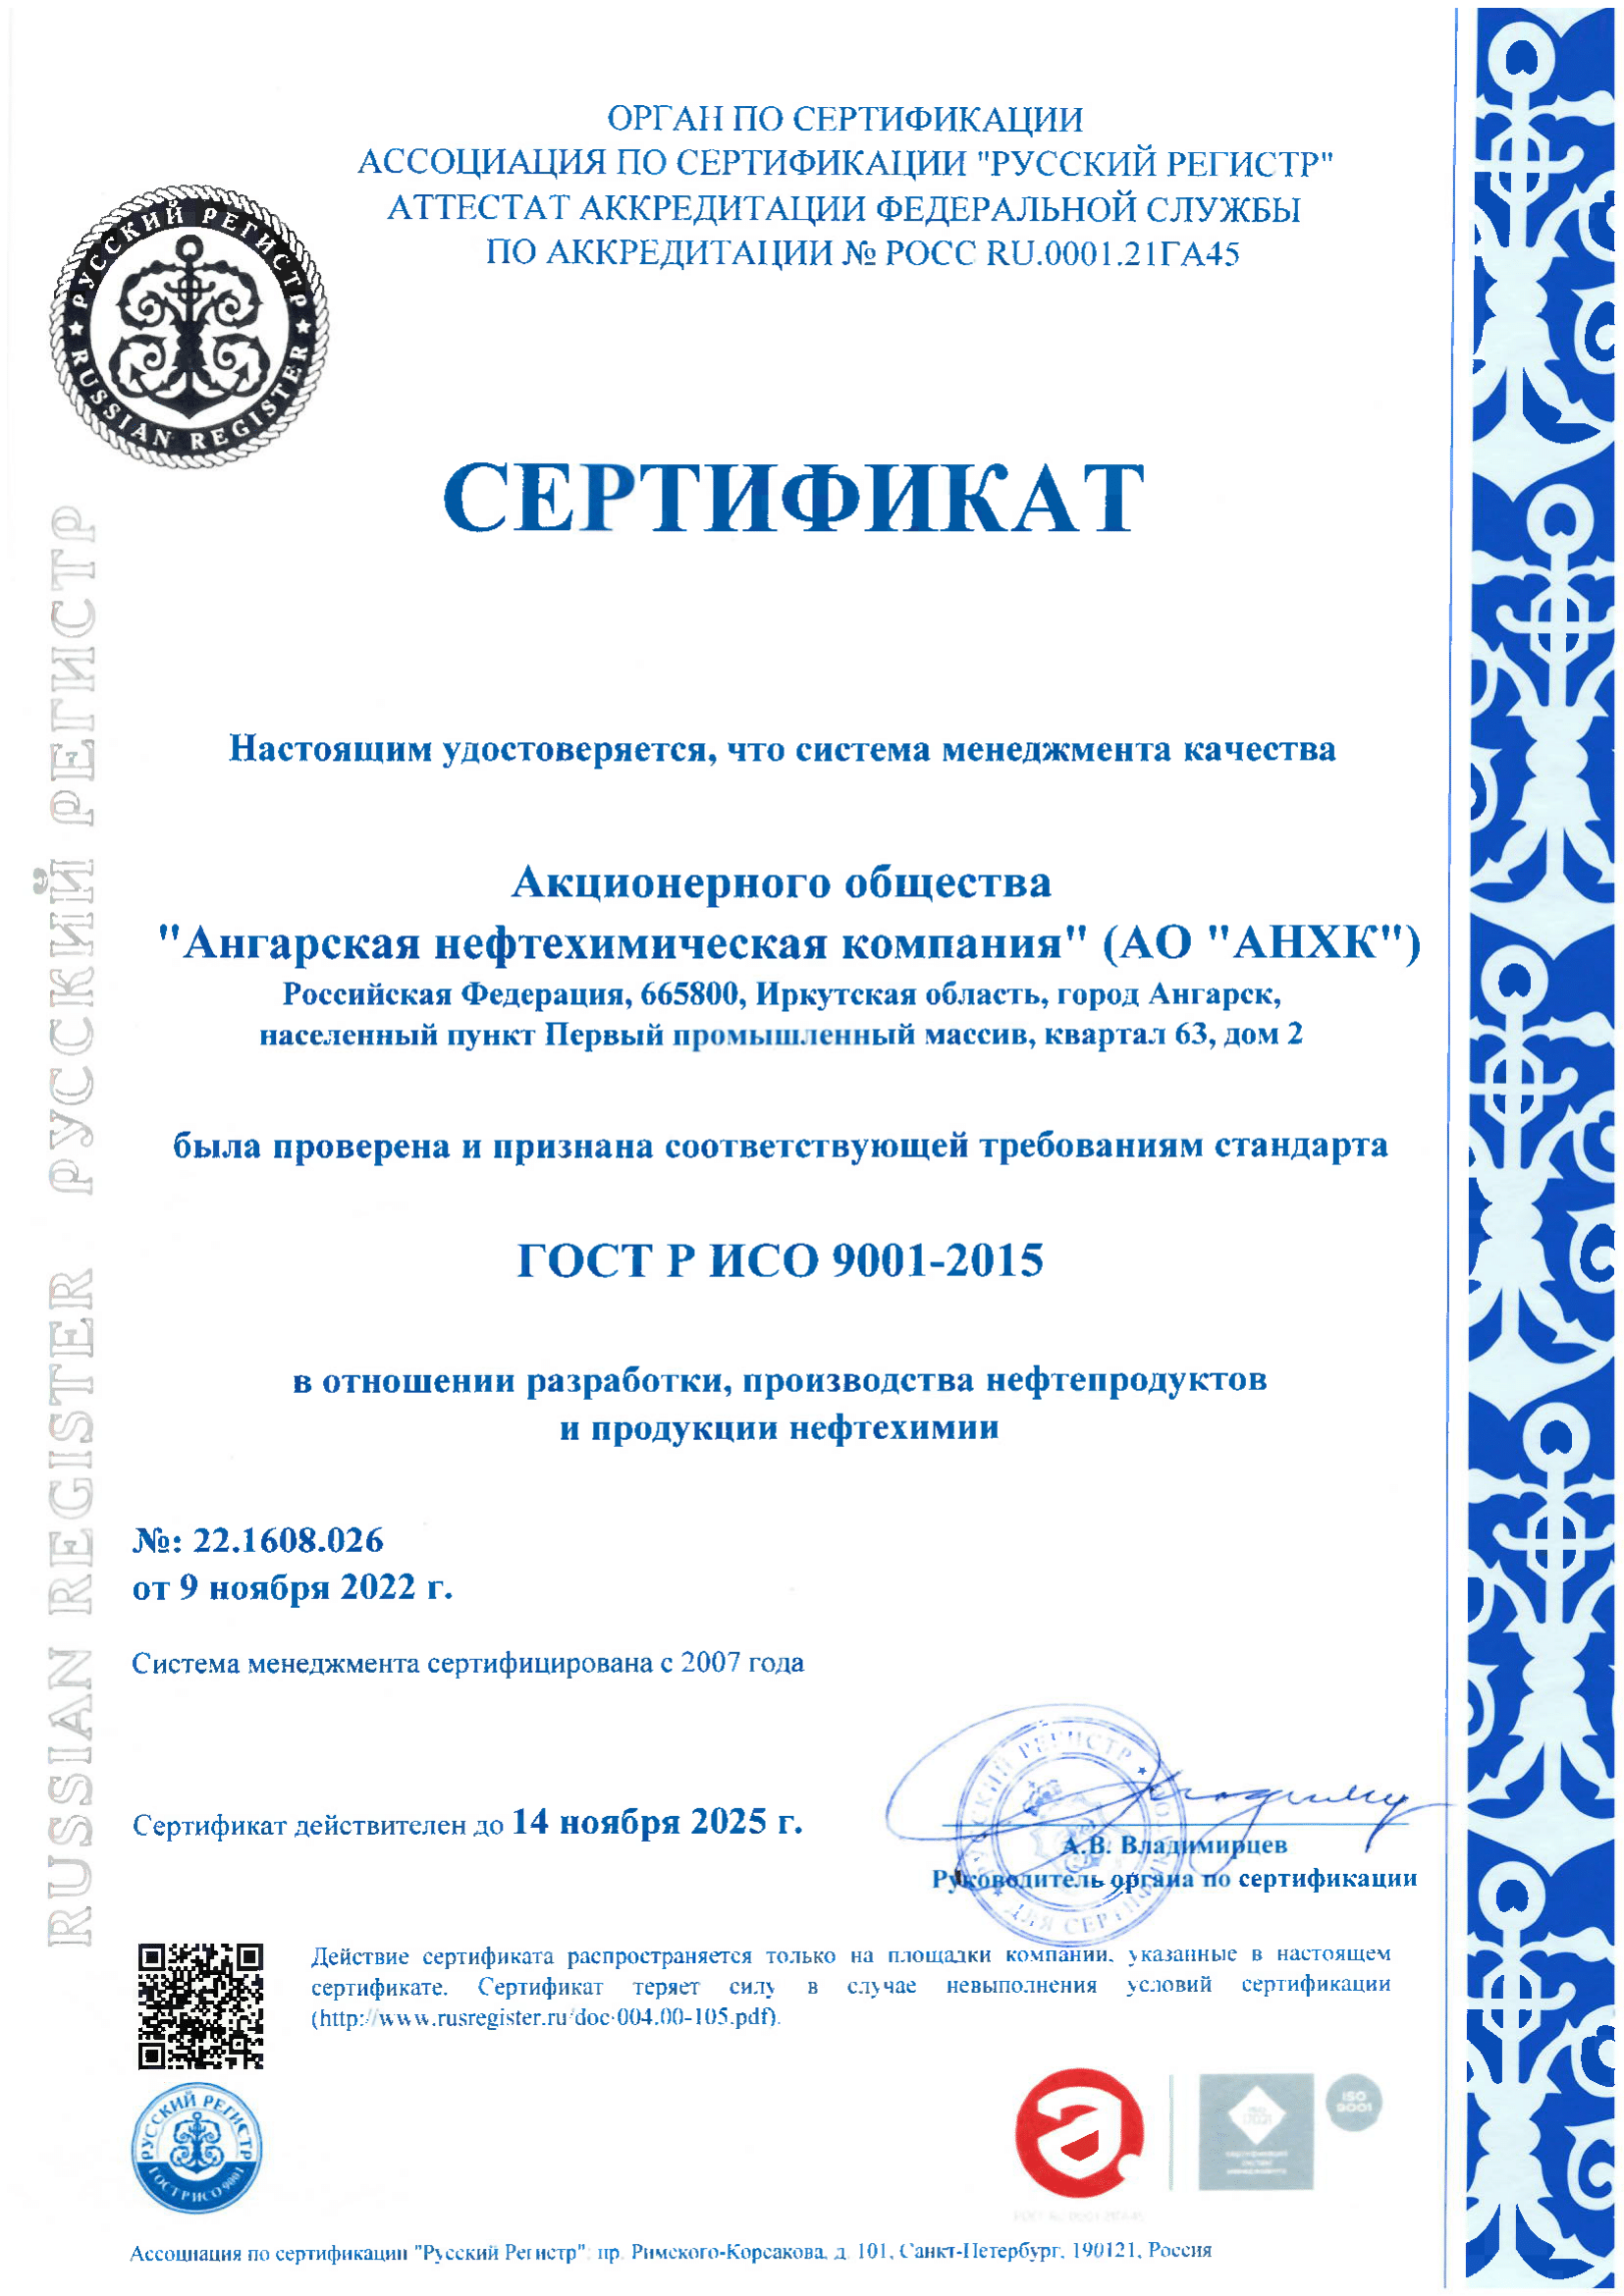 GOST R ISO 9001-2015 22.1608.026 (RU)